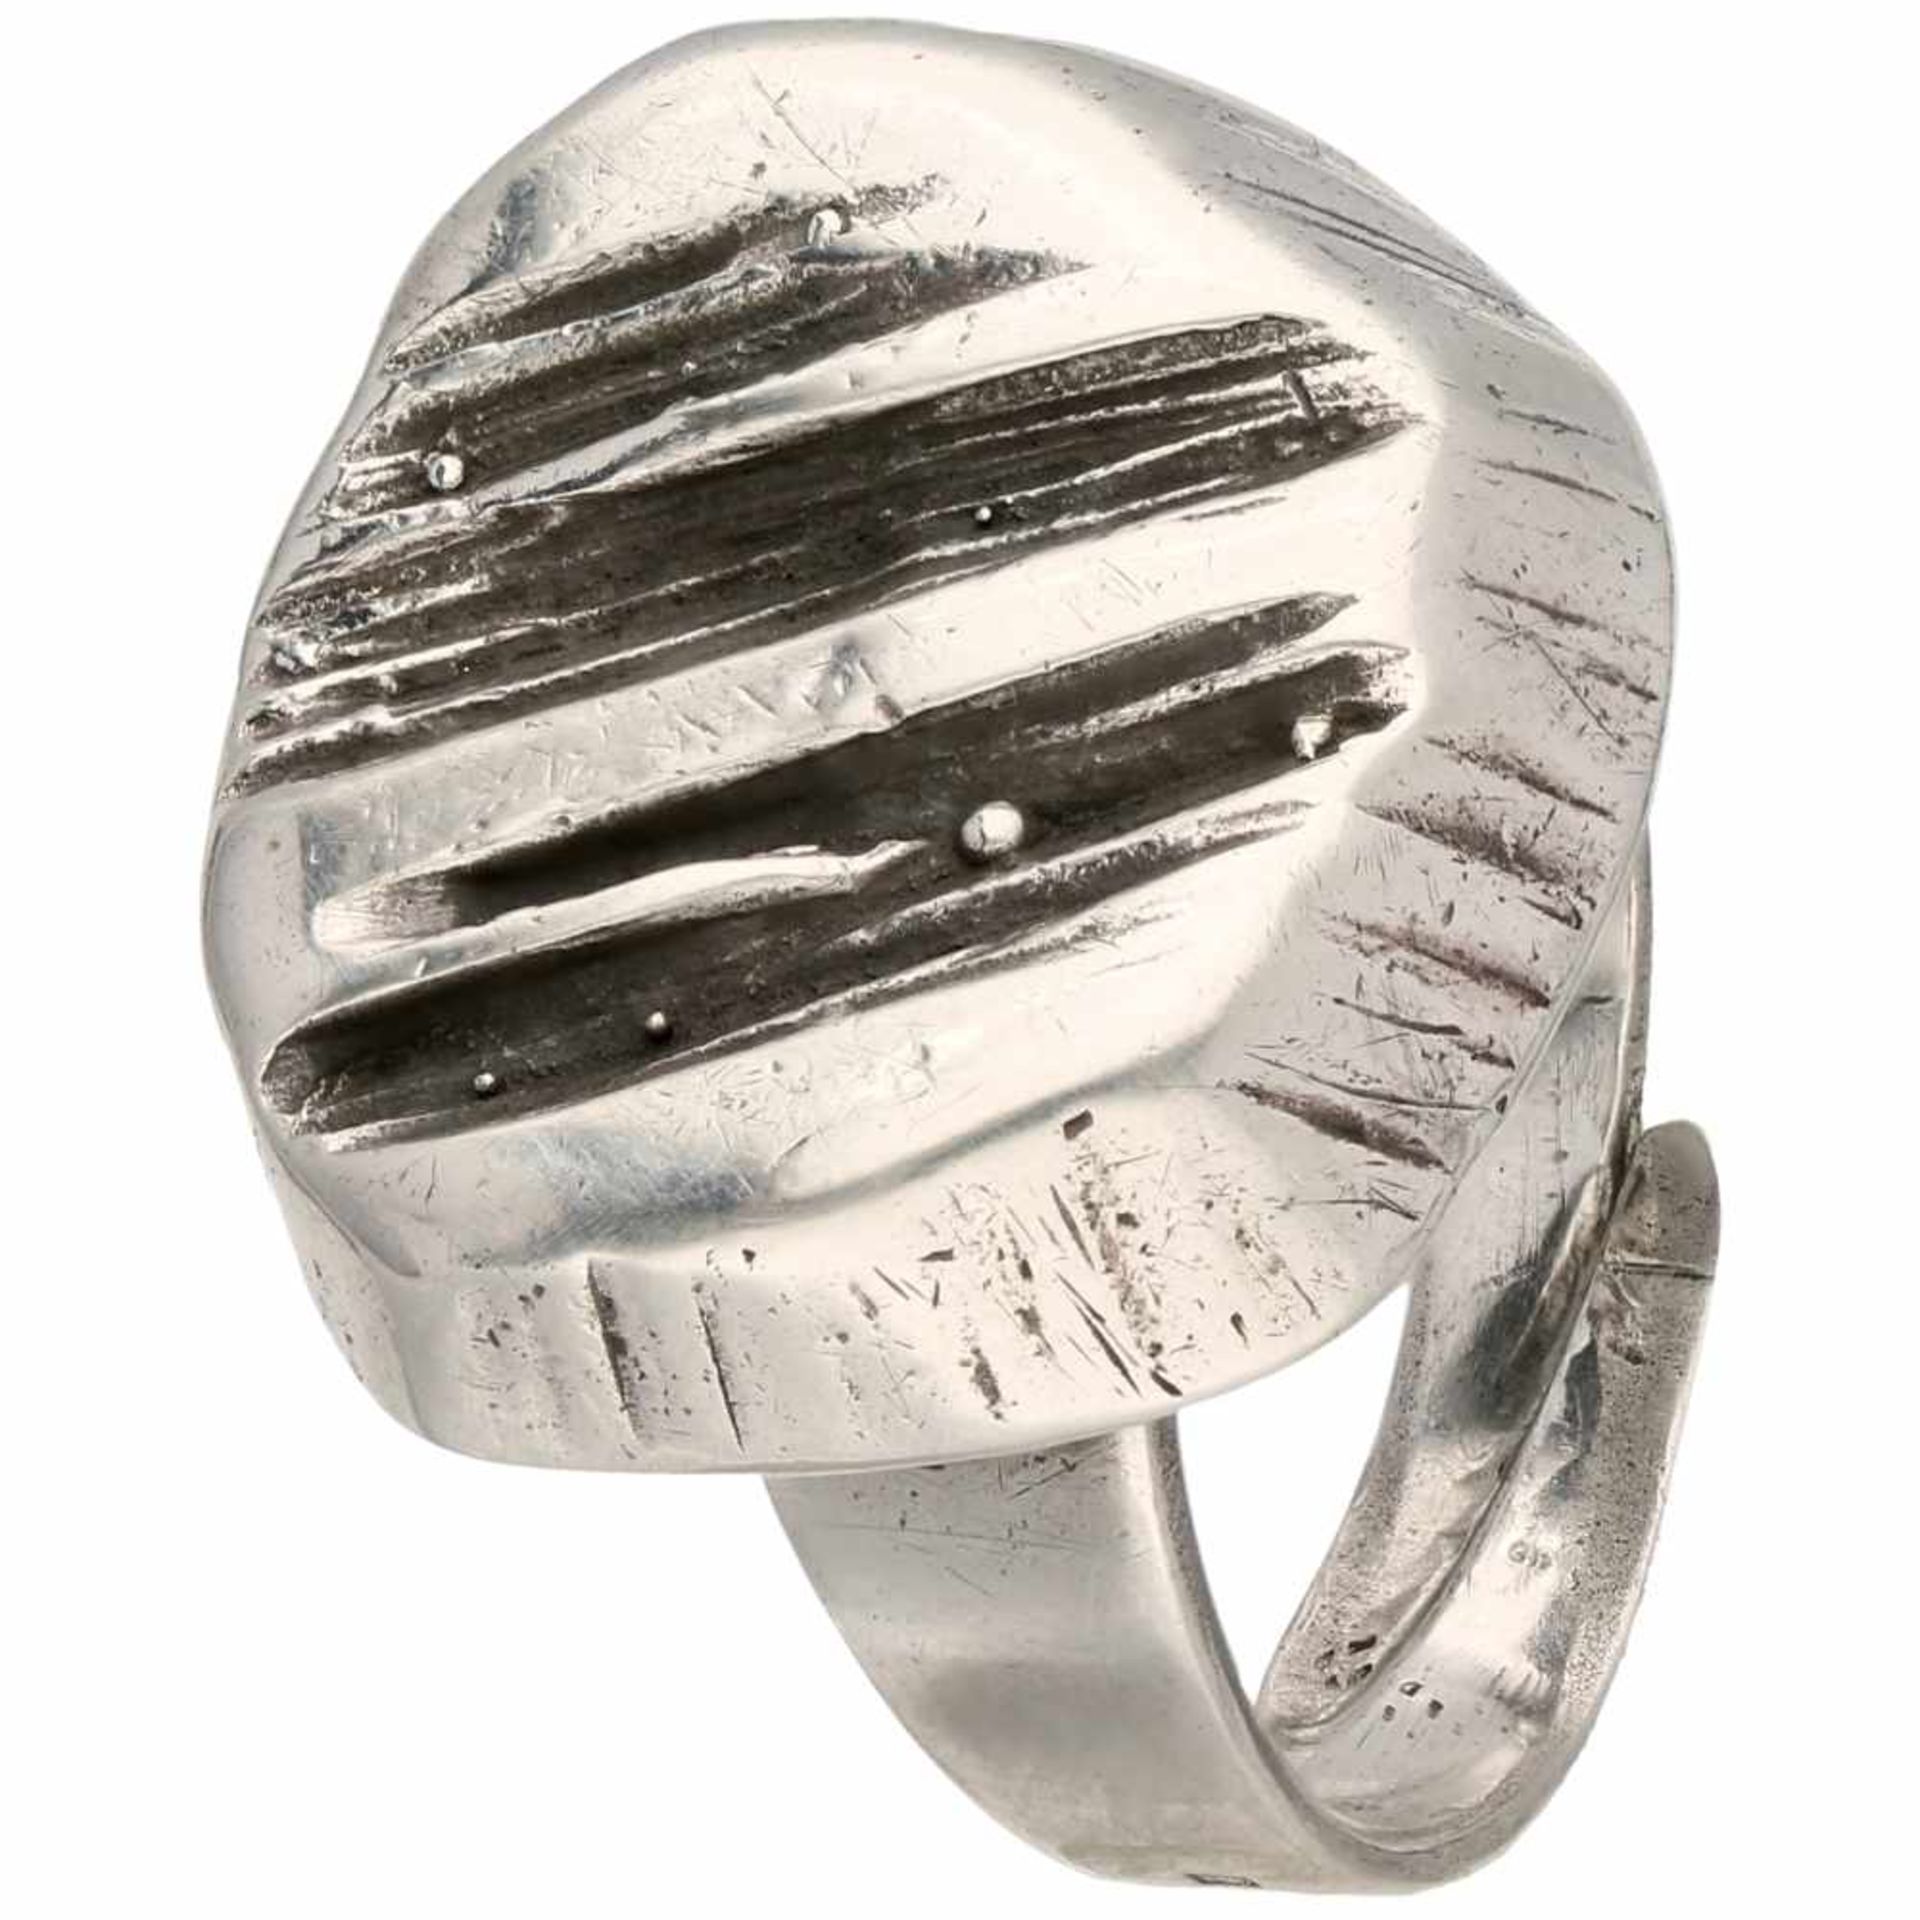 Zilveren Sten & Laine ring - 925/1000.Finland, 1973. Ring is verstelbaar. Ringmaat: 19 mm.